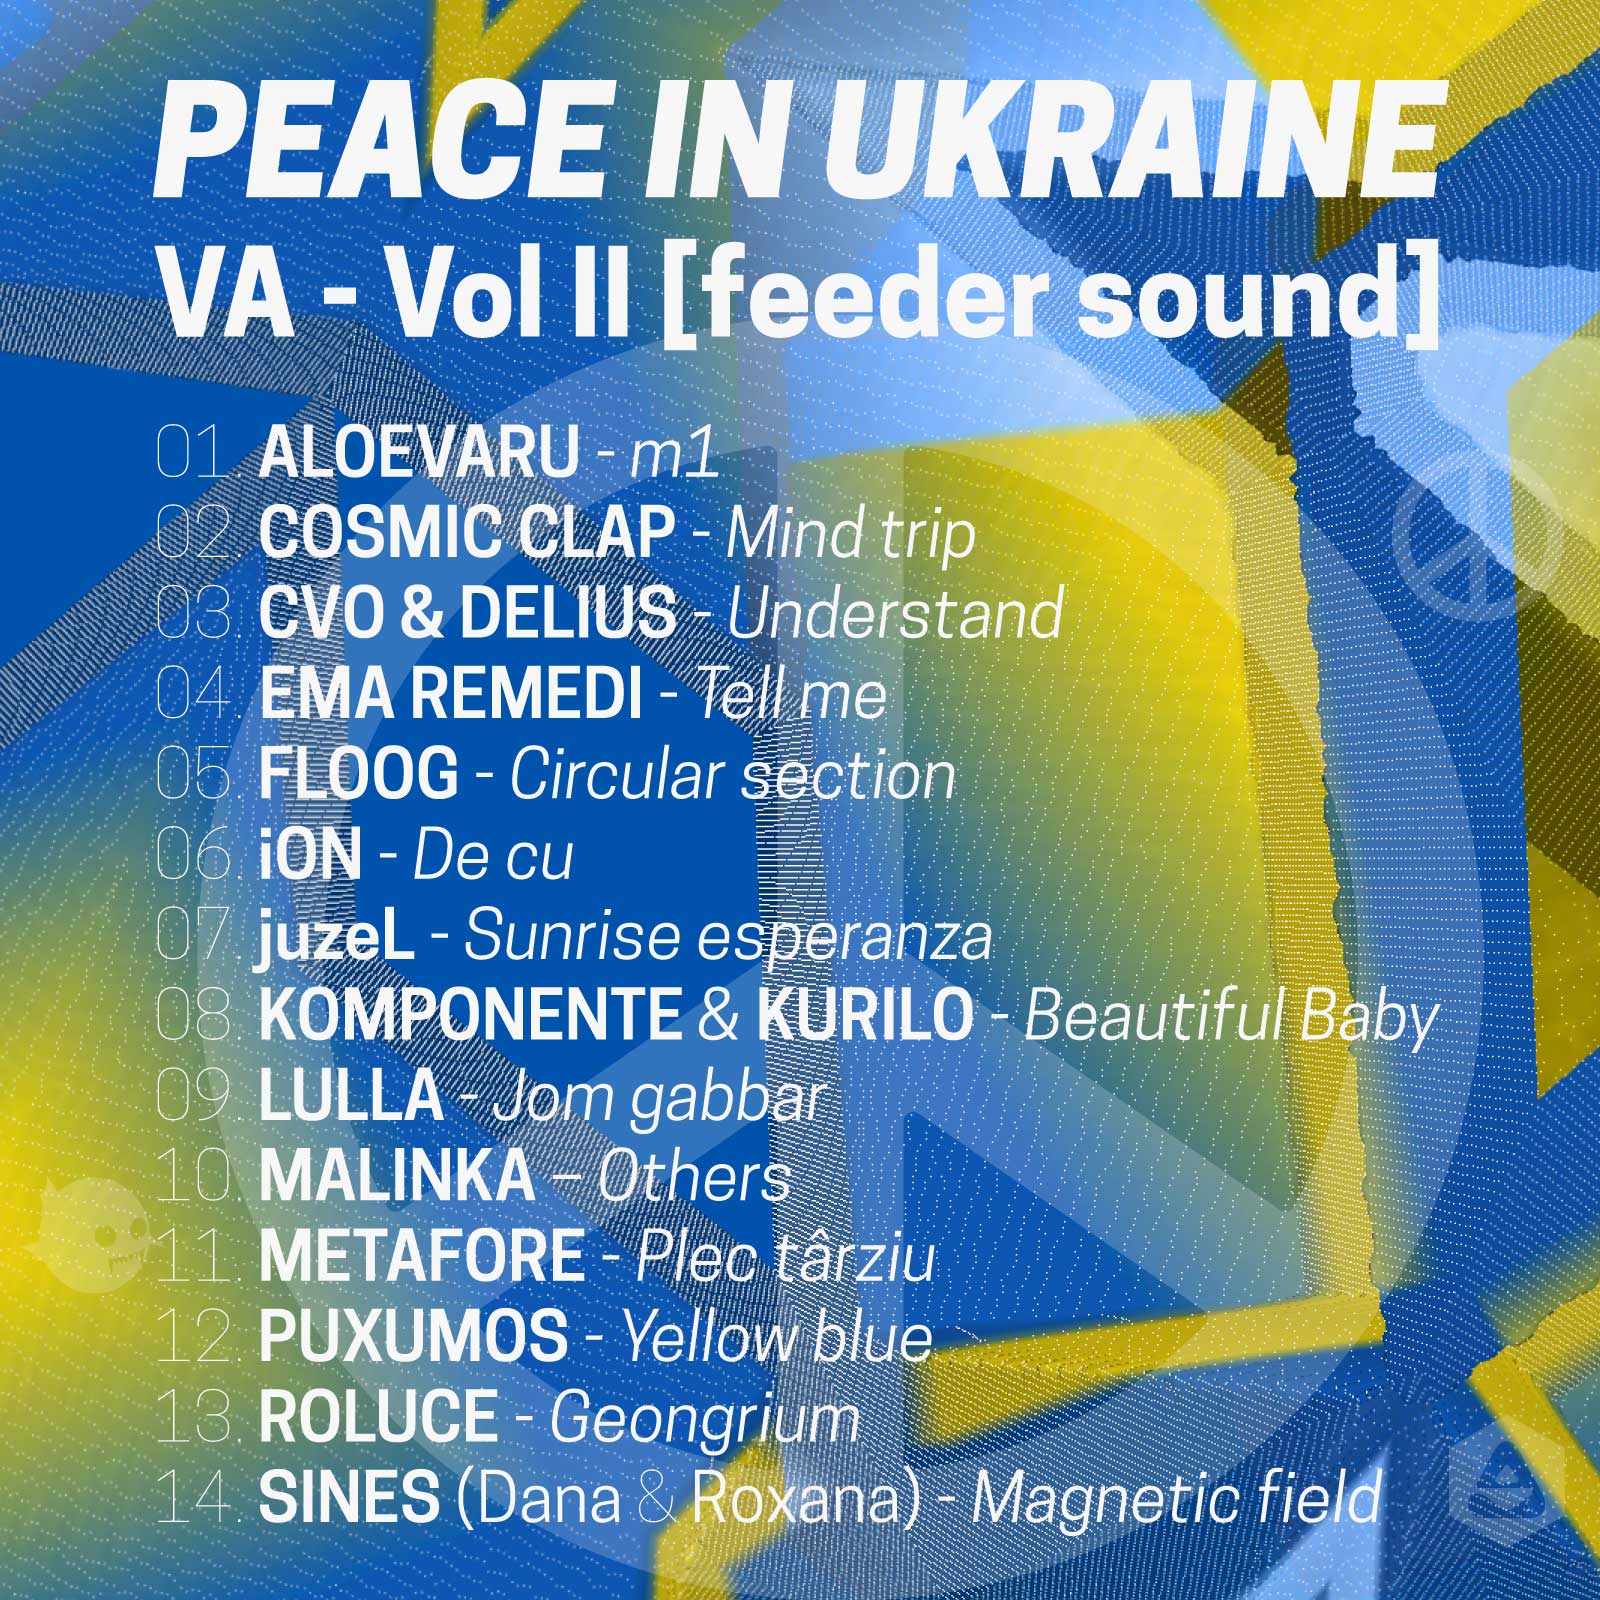 Descarcă a doua compilație PEACE IN UKRAINE VA – Vol II lansată de feeder sound pentru a ajuta artiștii ucraineni